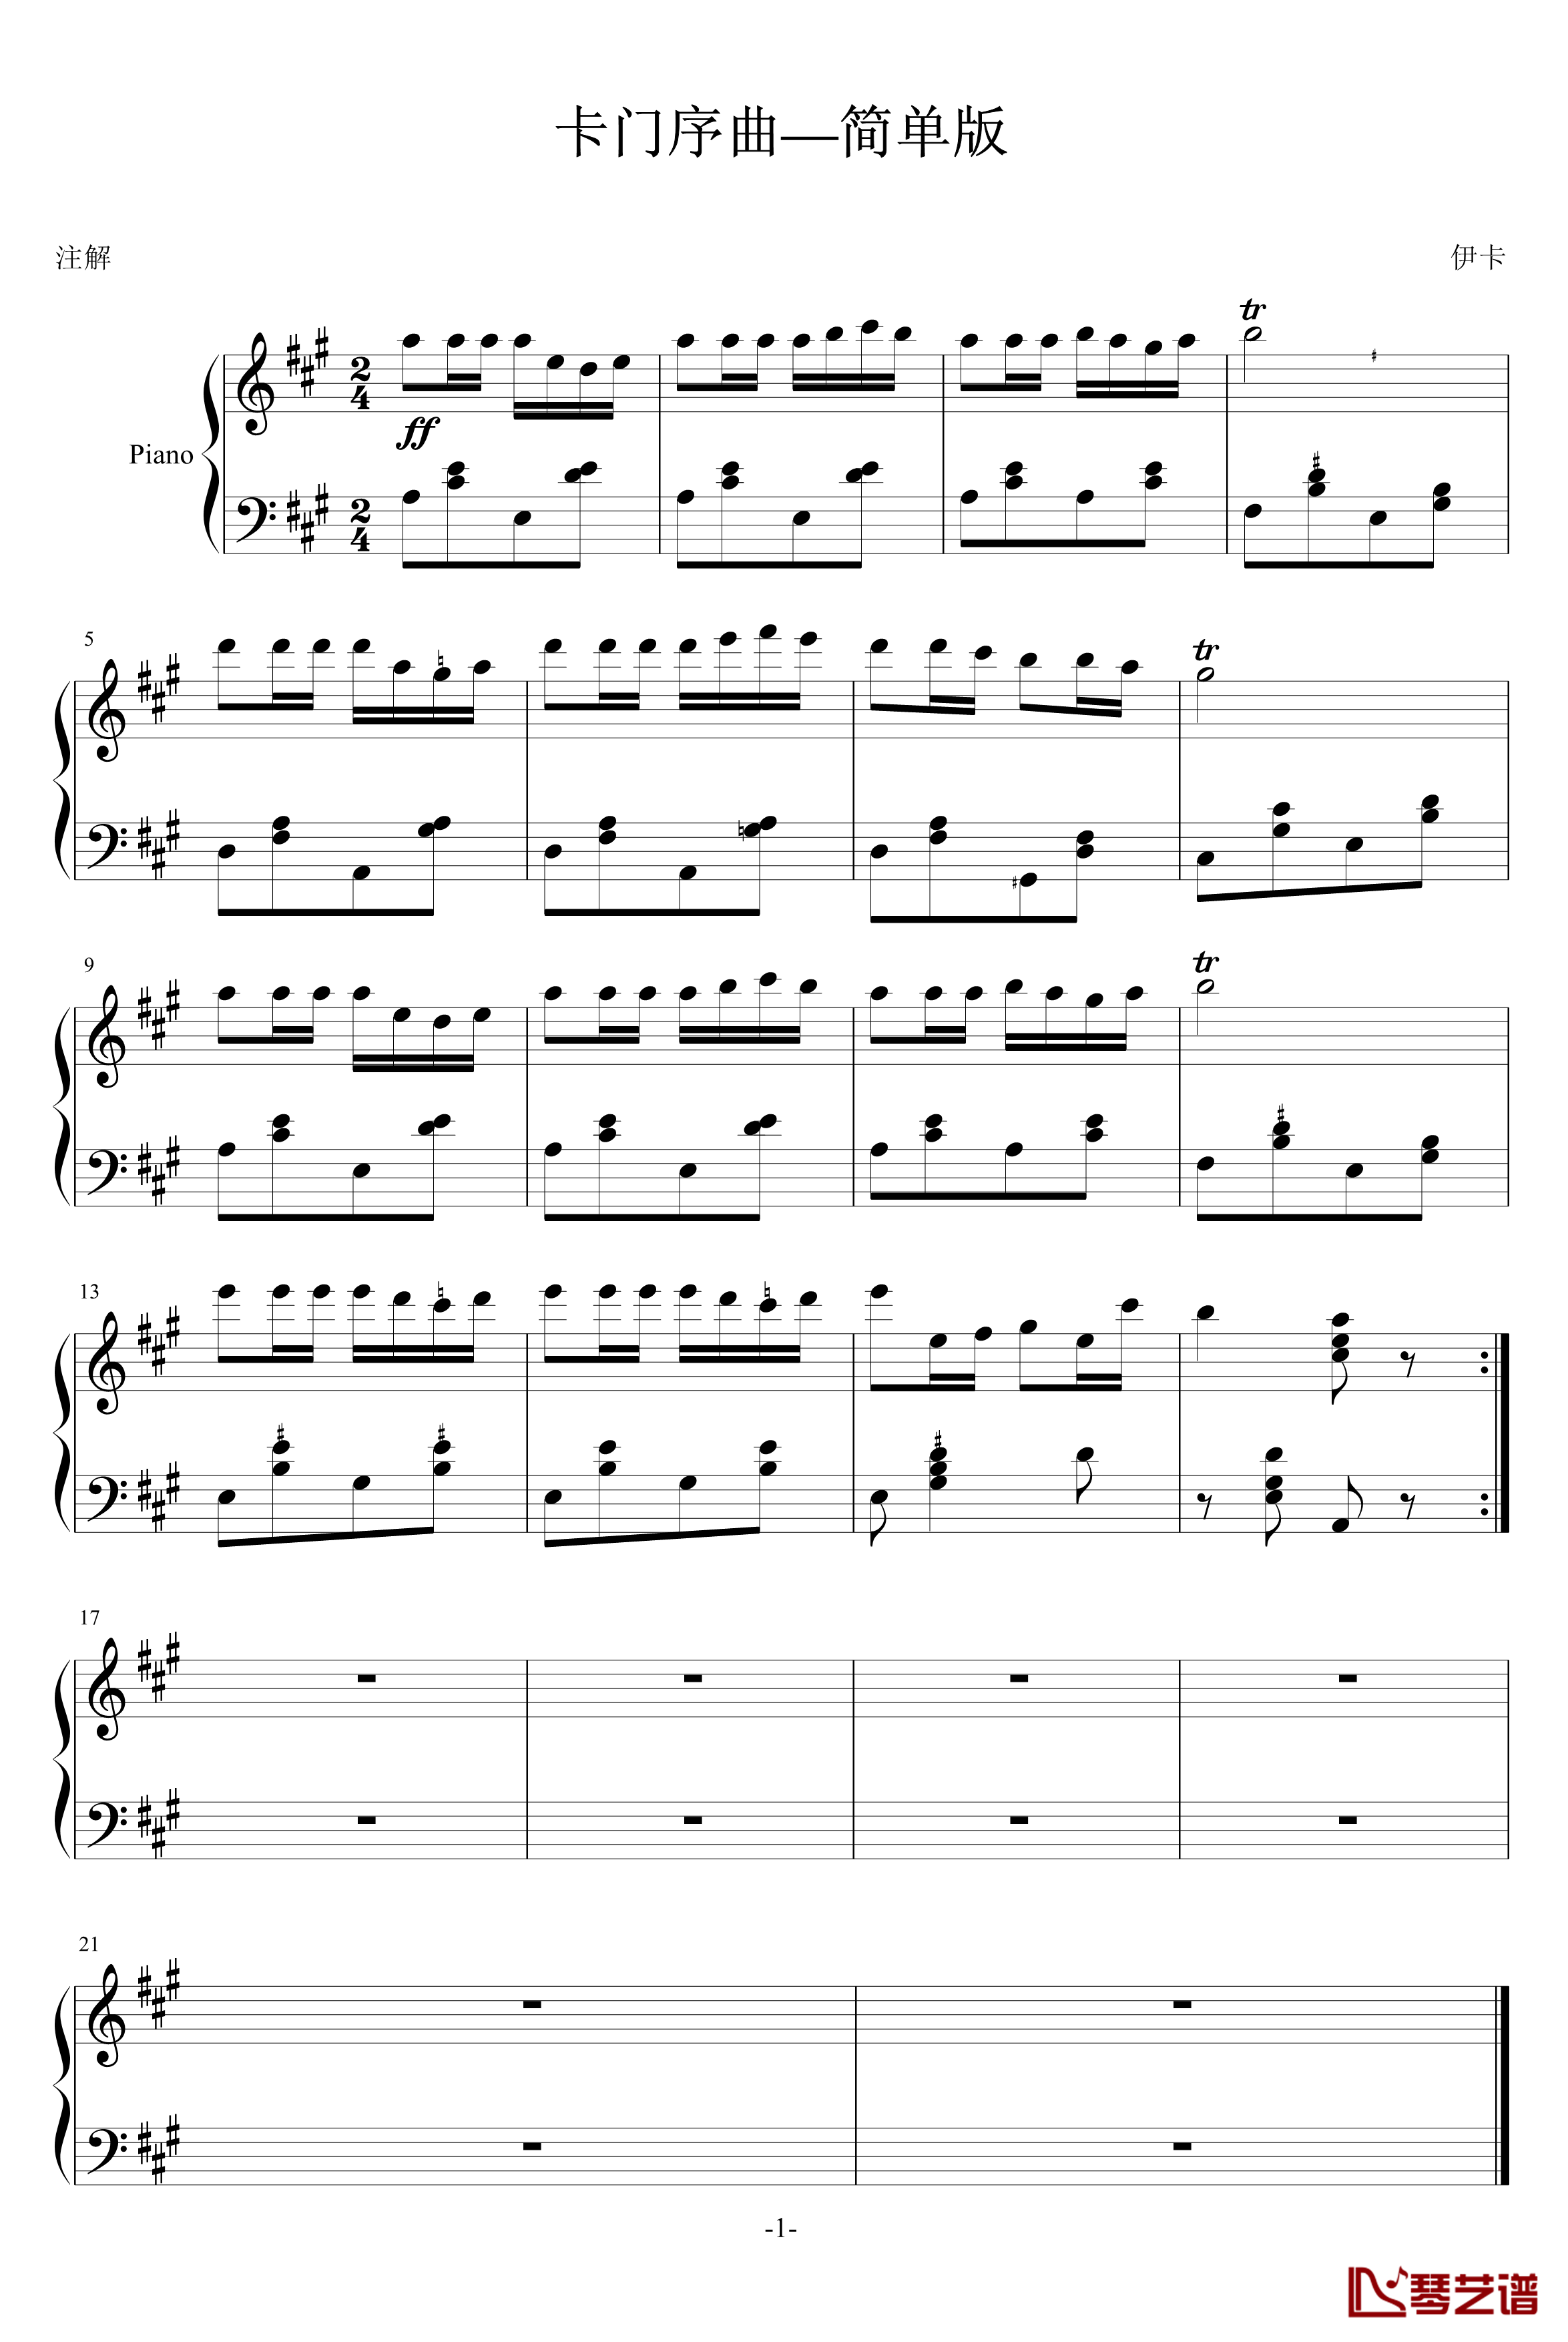 卡门序曲钢琴谱-简单版-比才-Bizet